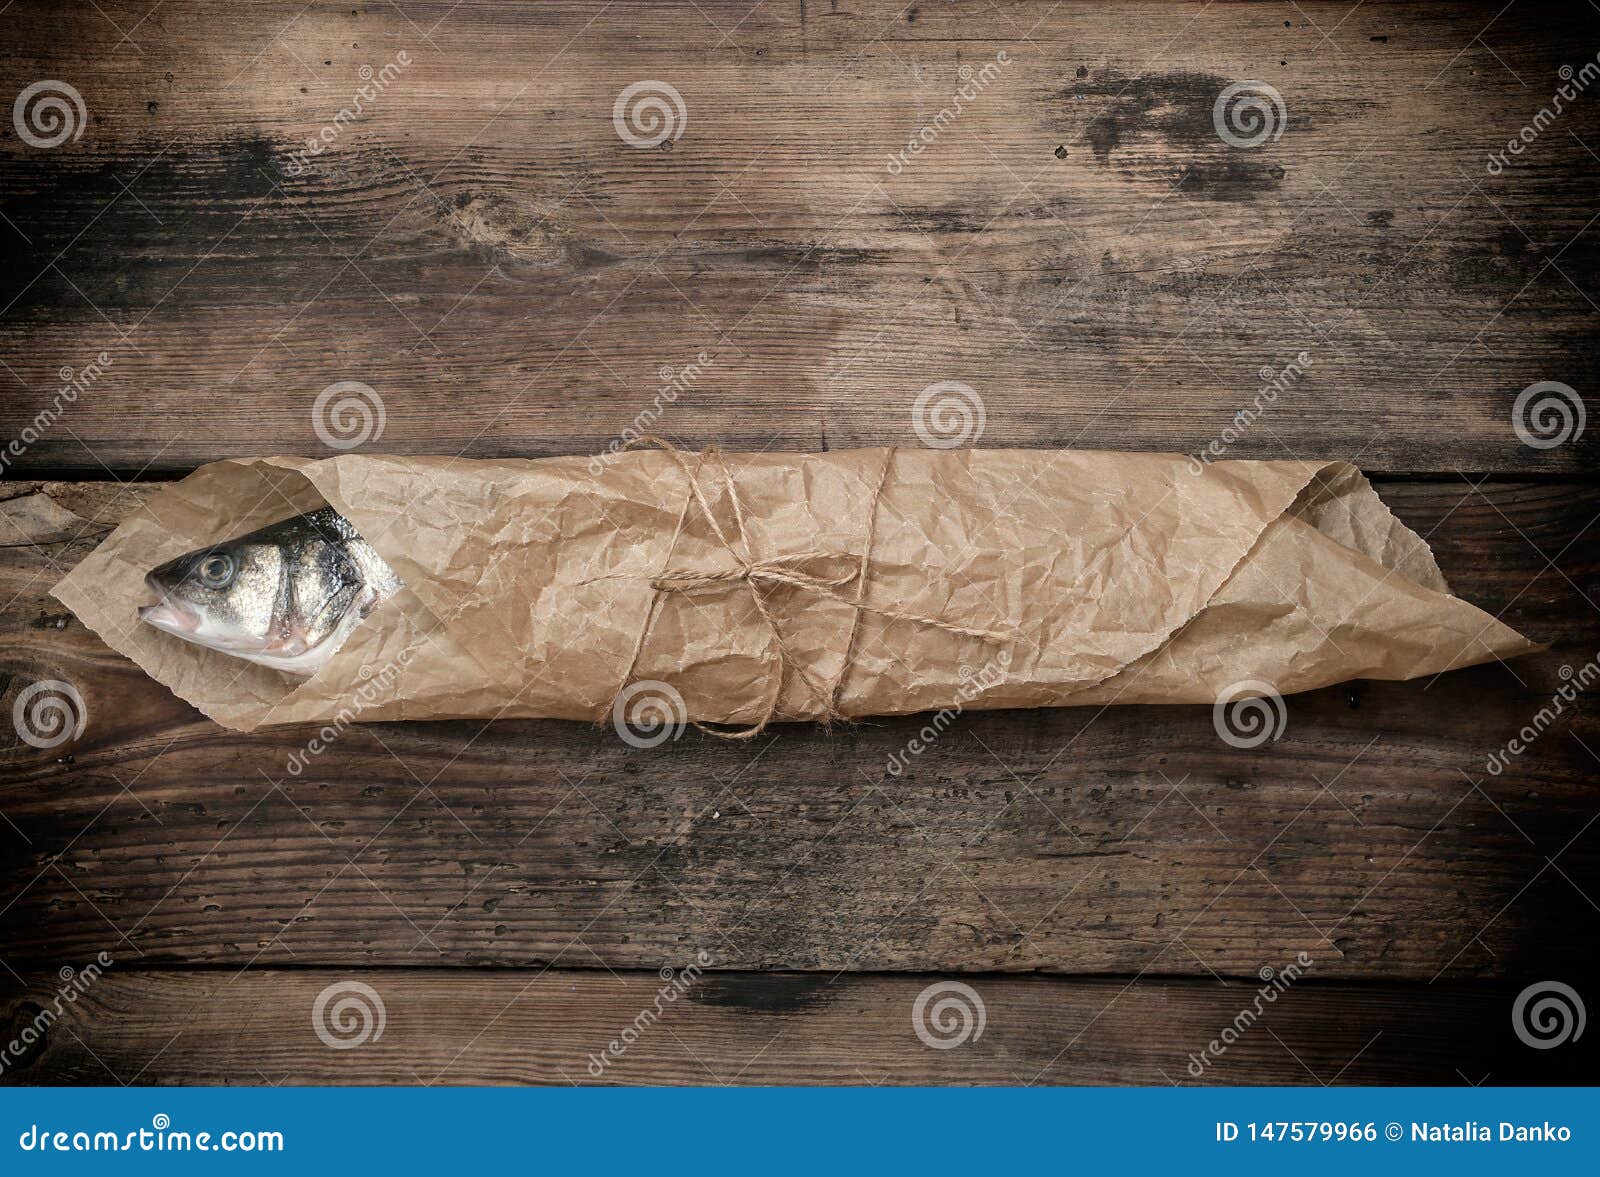 Здесь рыбу заворачивали. Упакованная рыба в бумаге. Рыба завернутая в белую бумагу. Упаковать рыбу в крафт бумагу. Тут рыбу заворачивали.